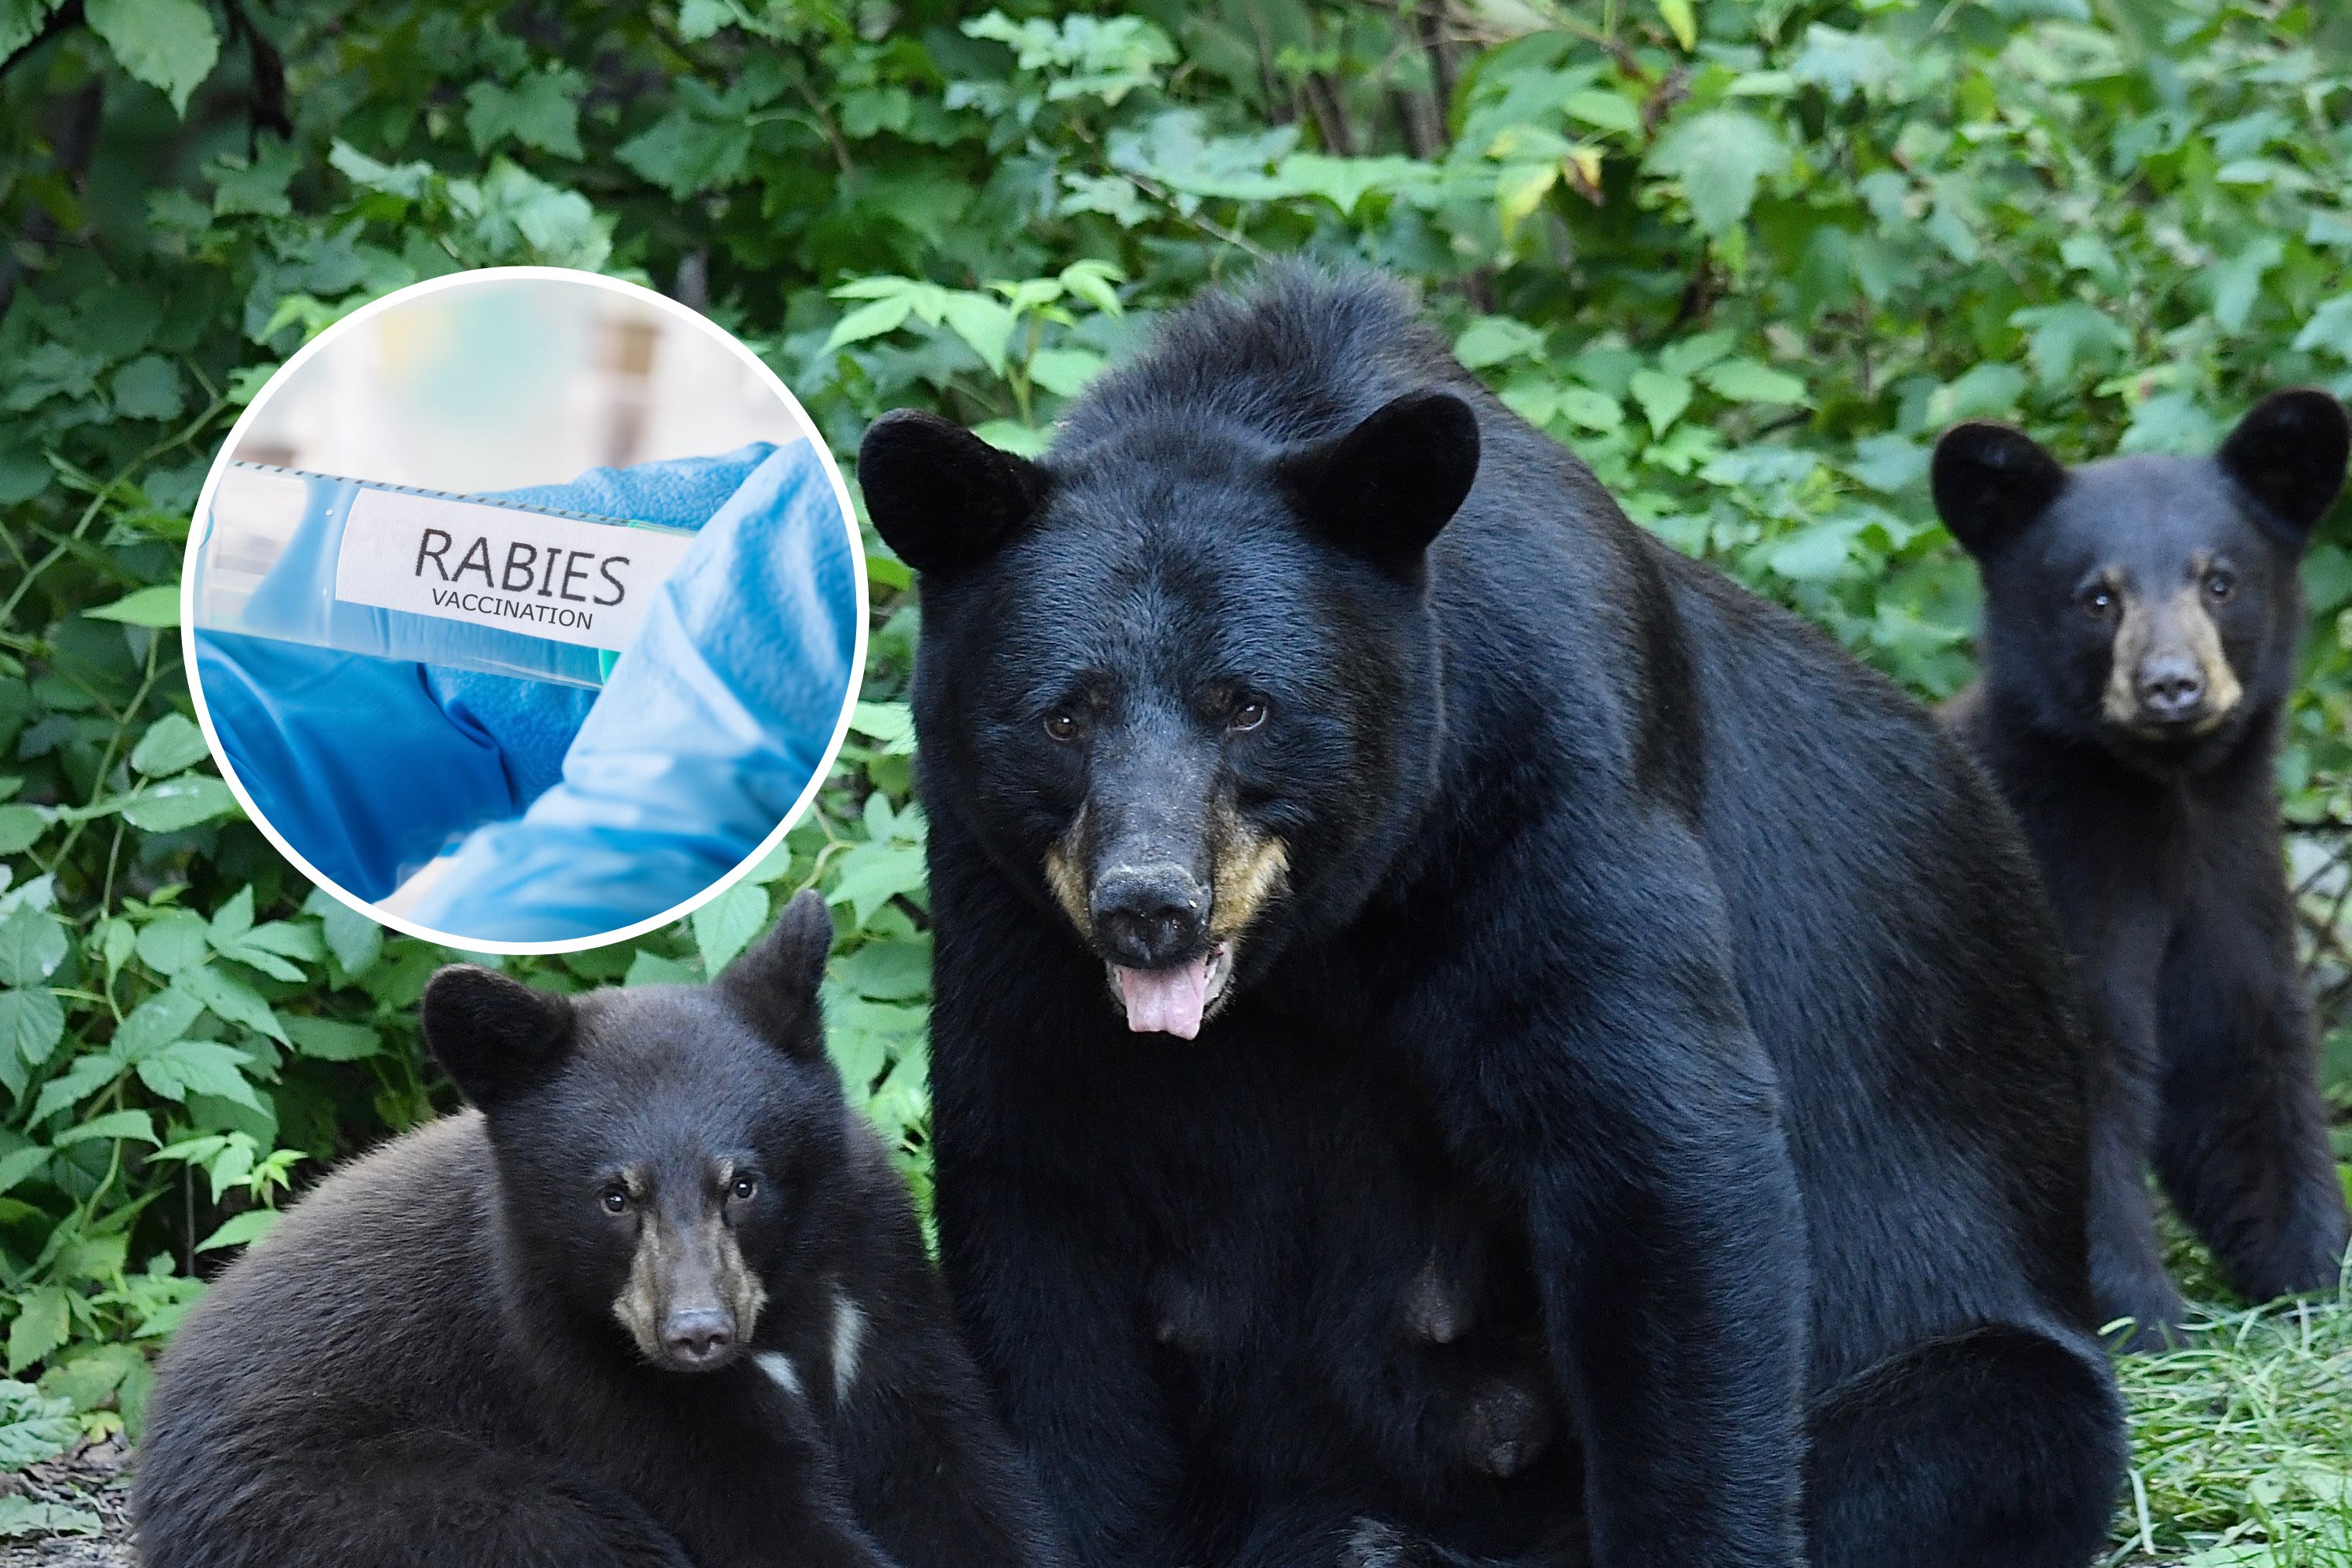 Rabies warning as disease detected in Connecticut black bear